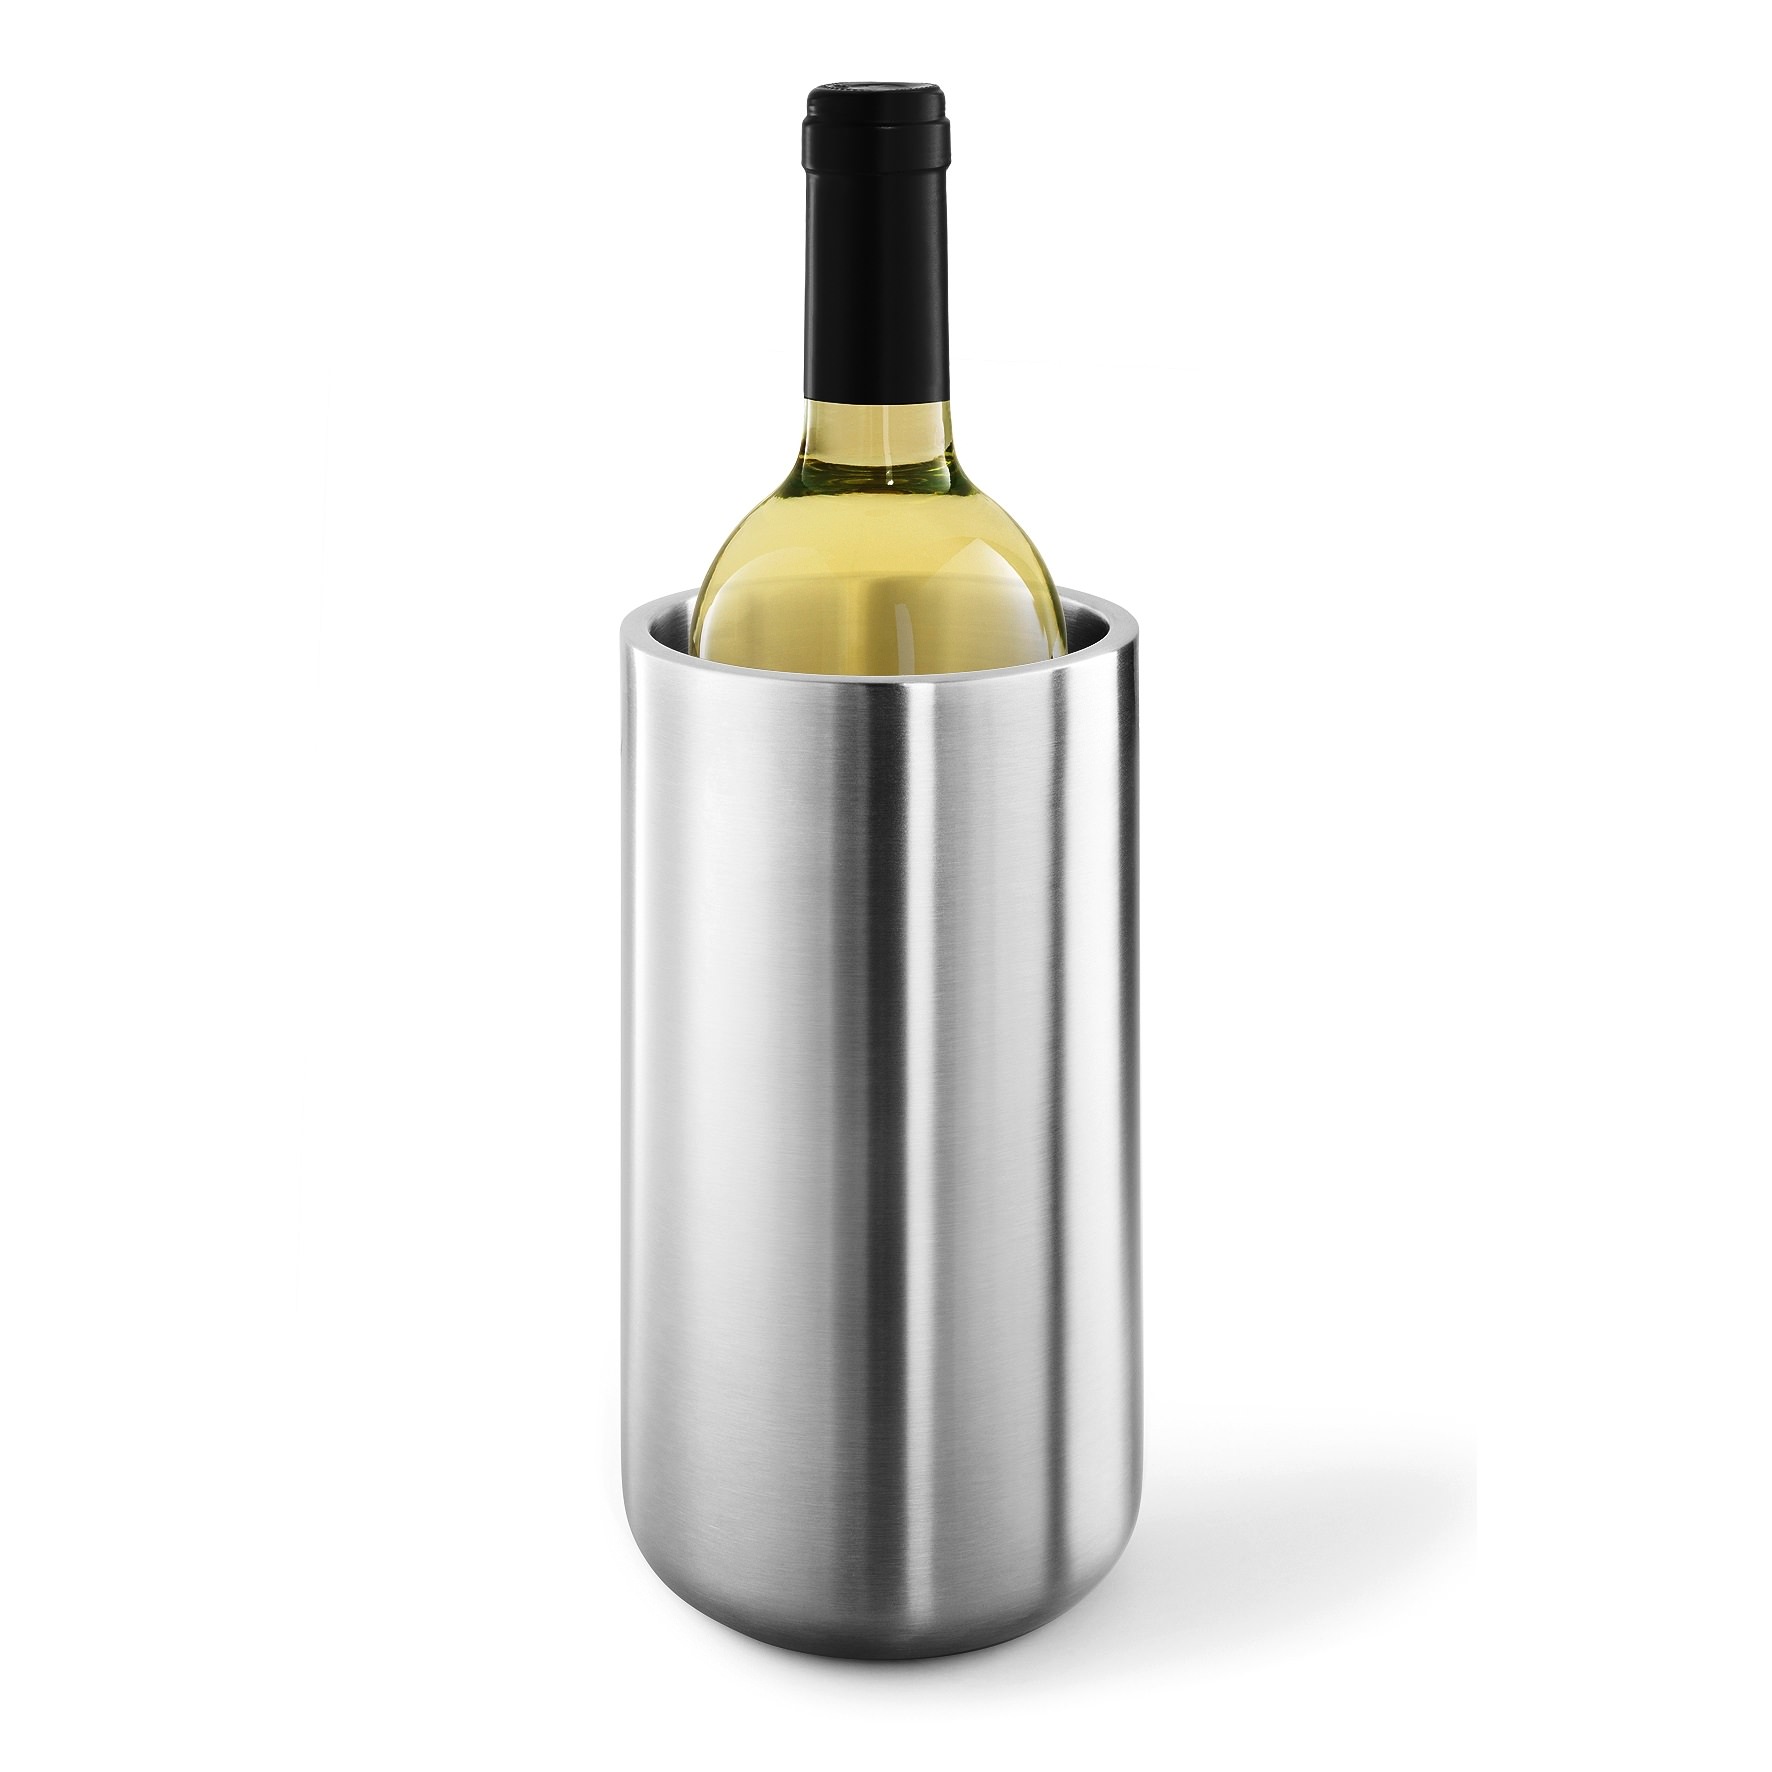 Zack Кулер для бутылки вина Contas | https://grandposuda.com.ua